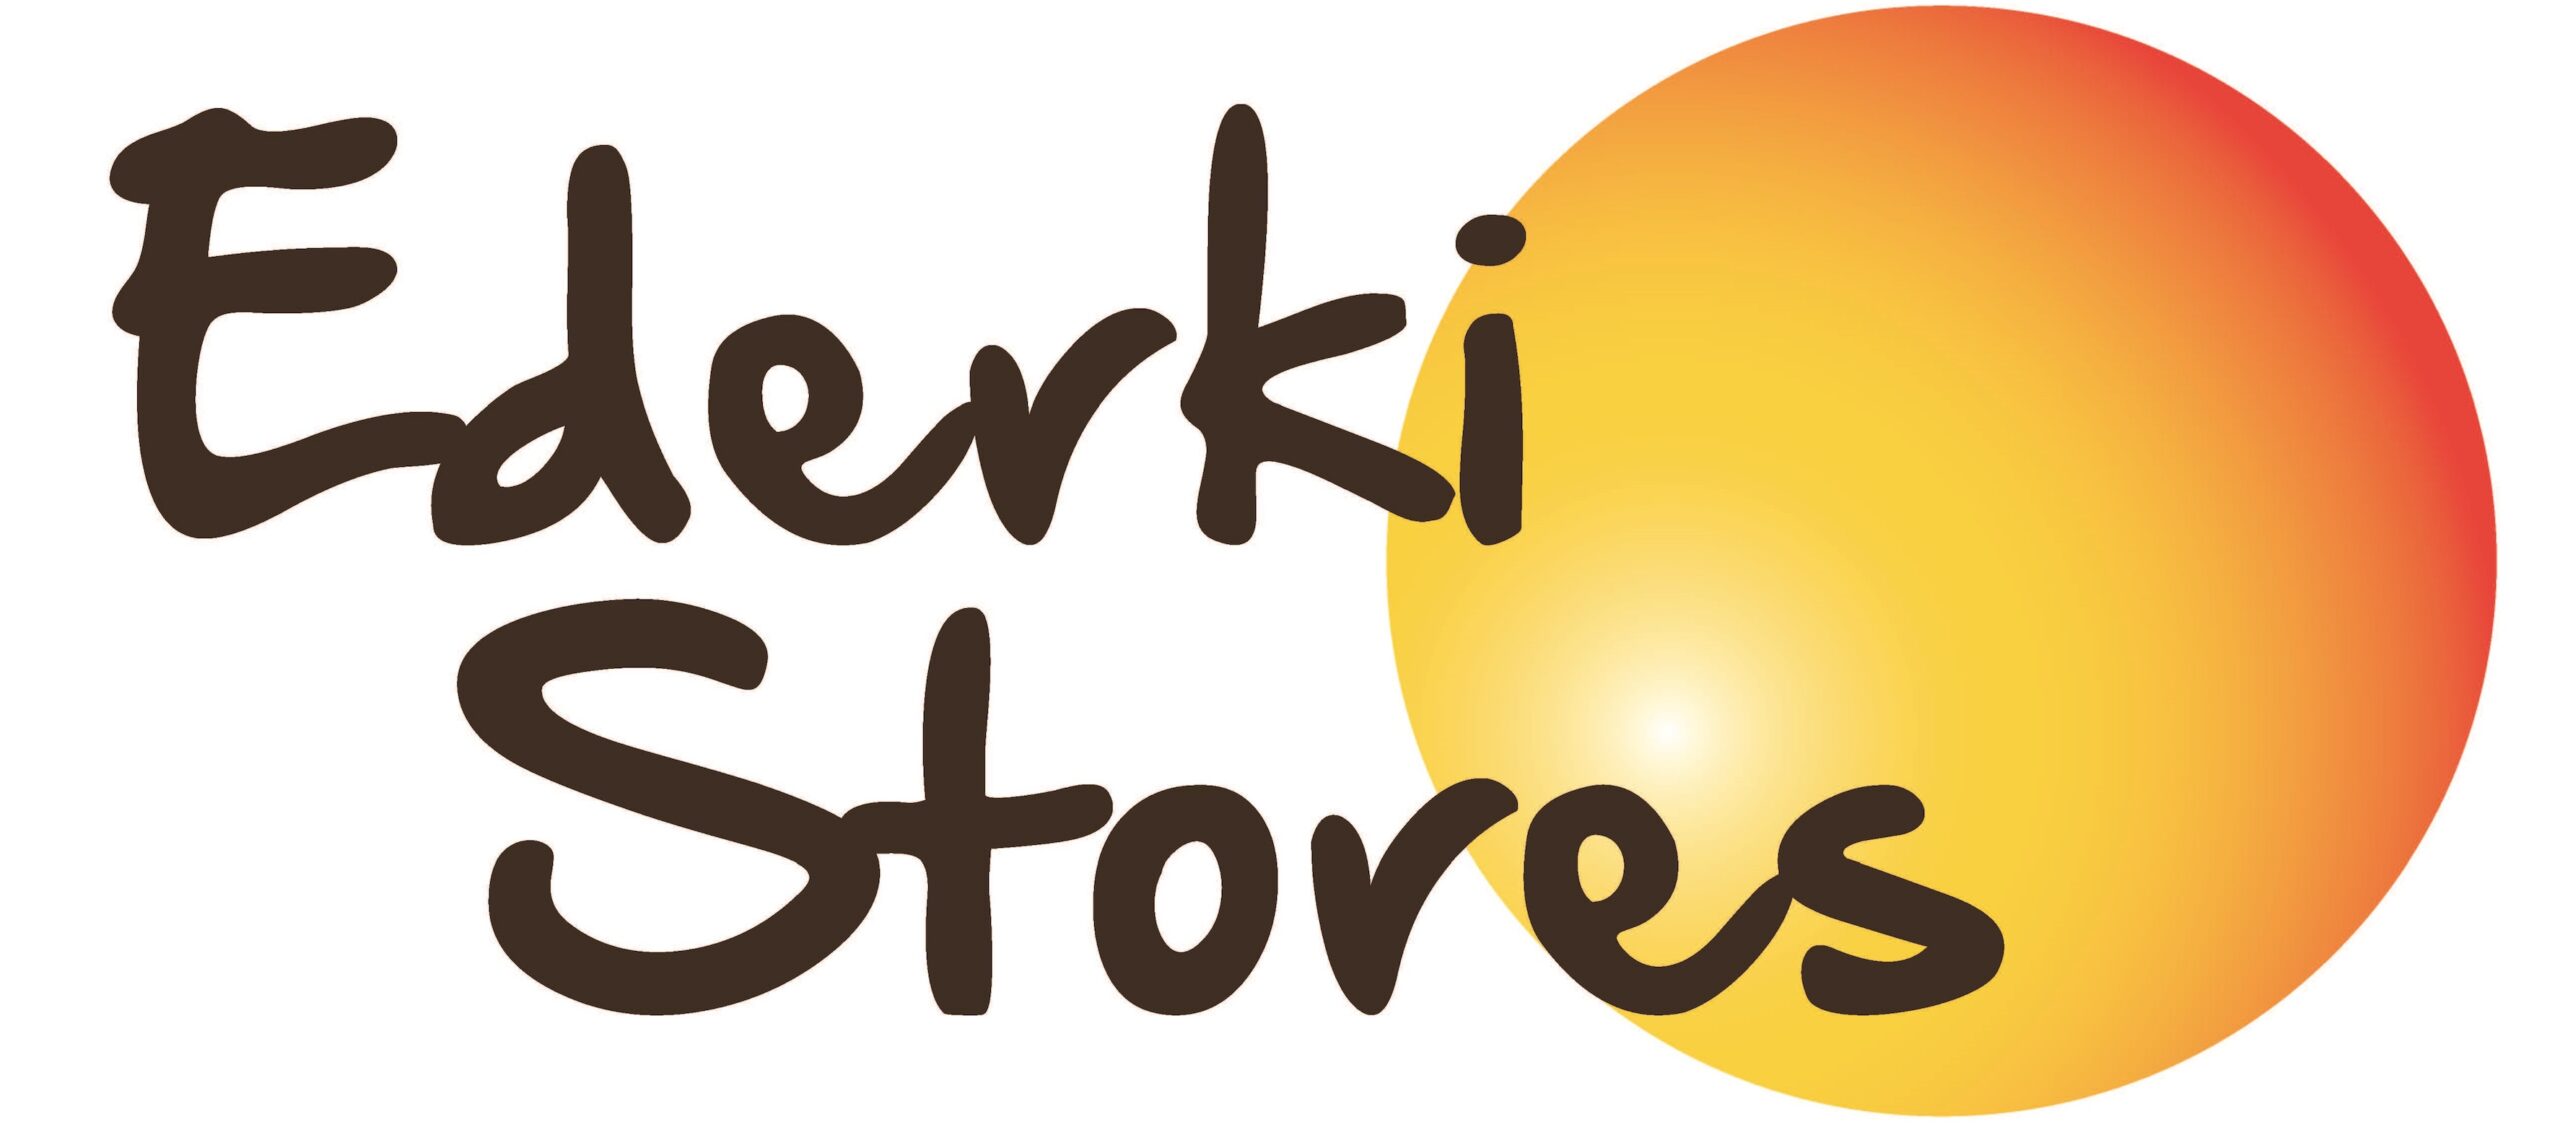 Logo Ederki Stores